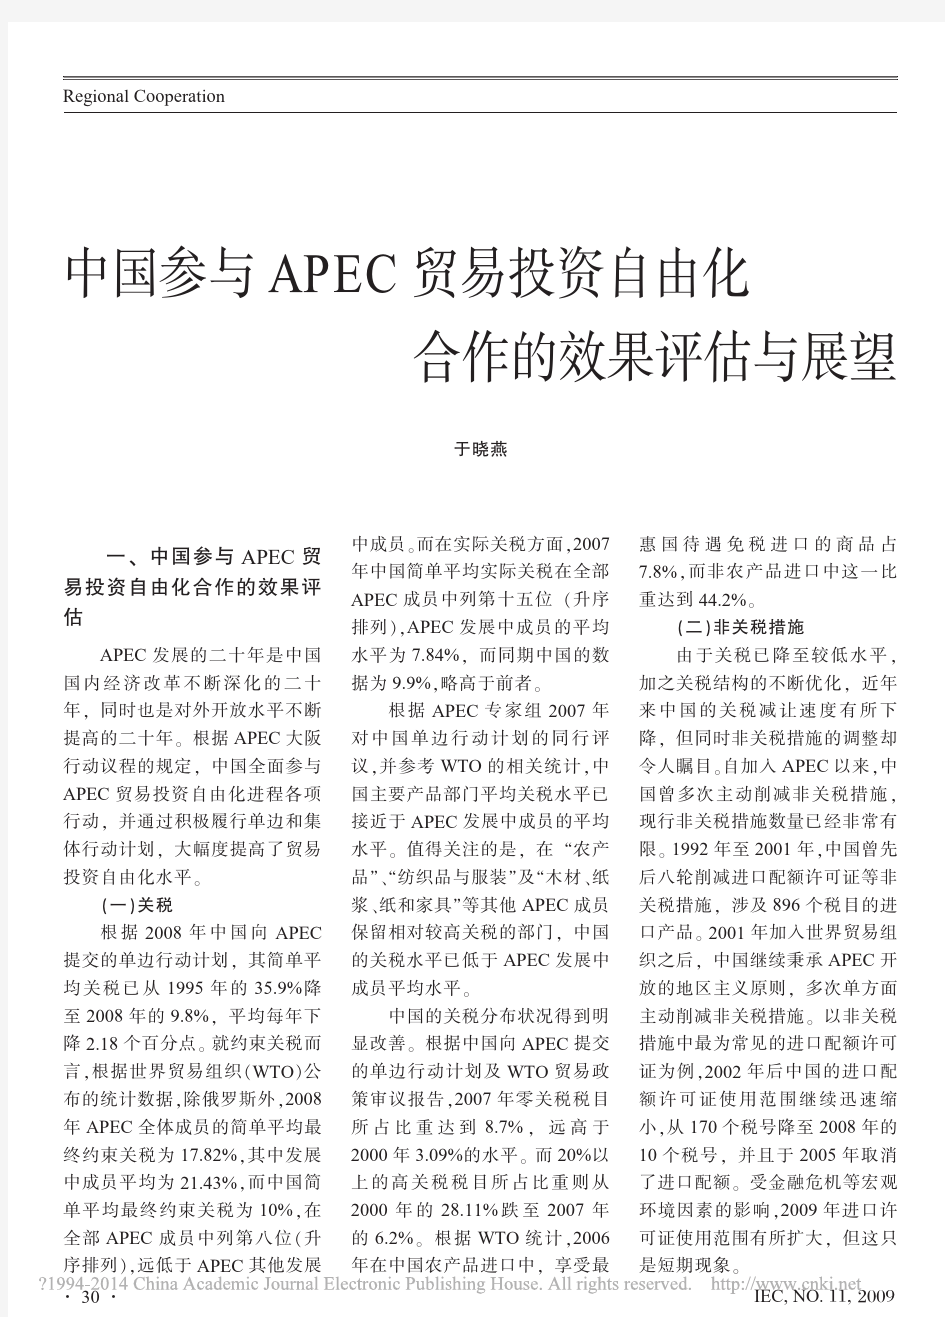 中国参与APEC贸易投资自由化合作的效果评估与展望_于晓燕